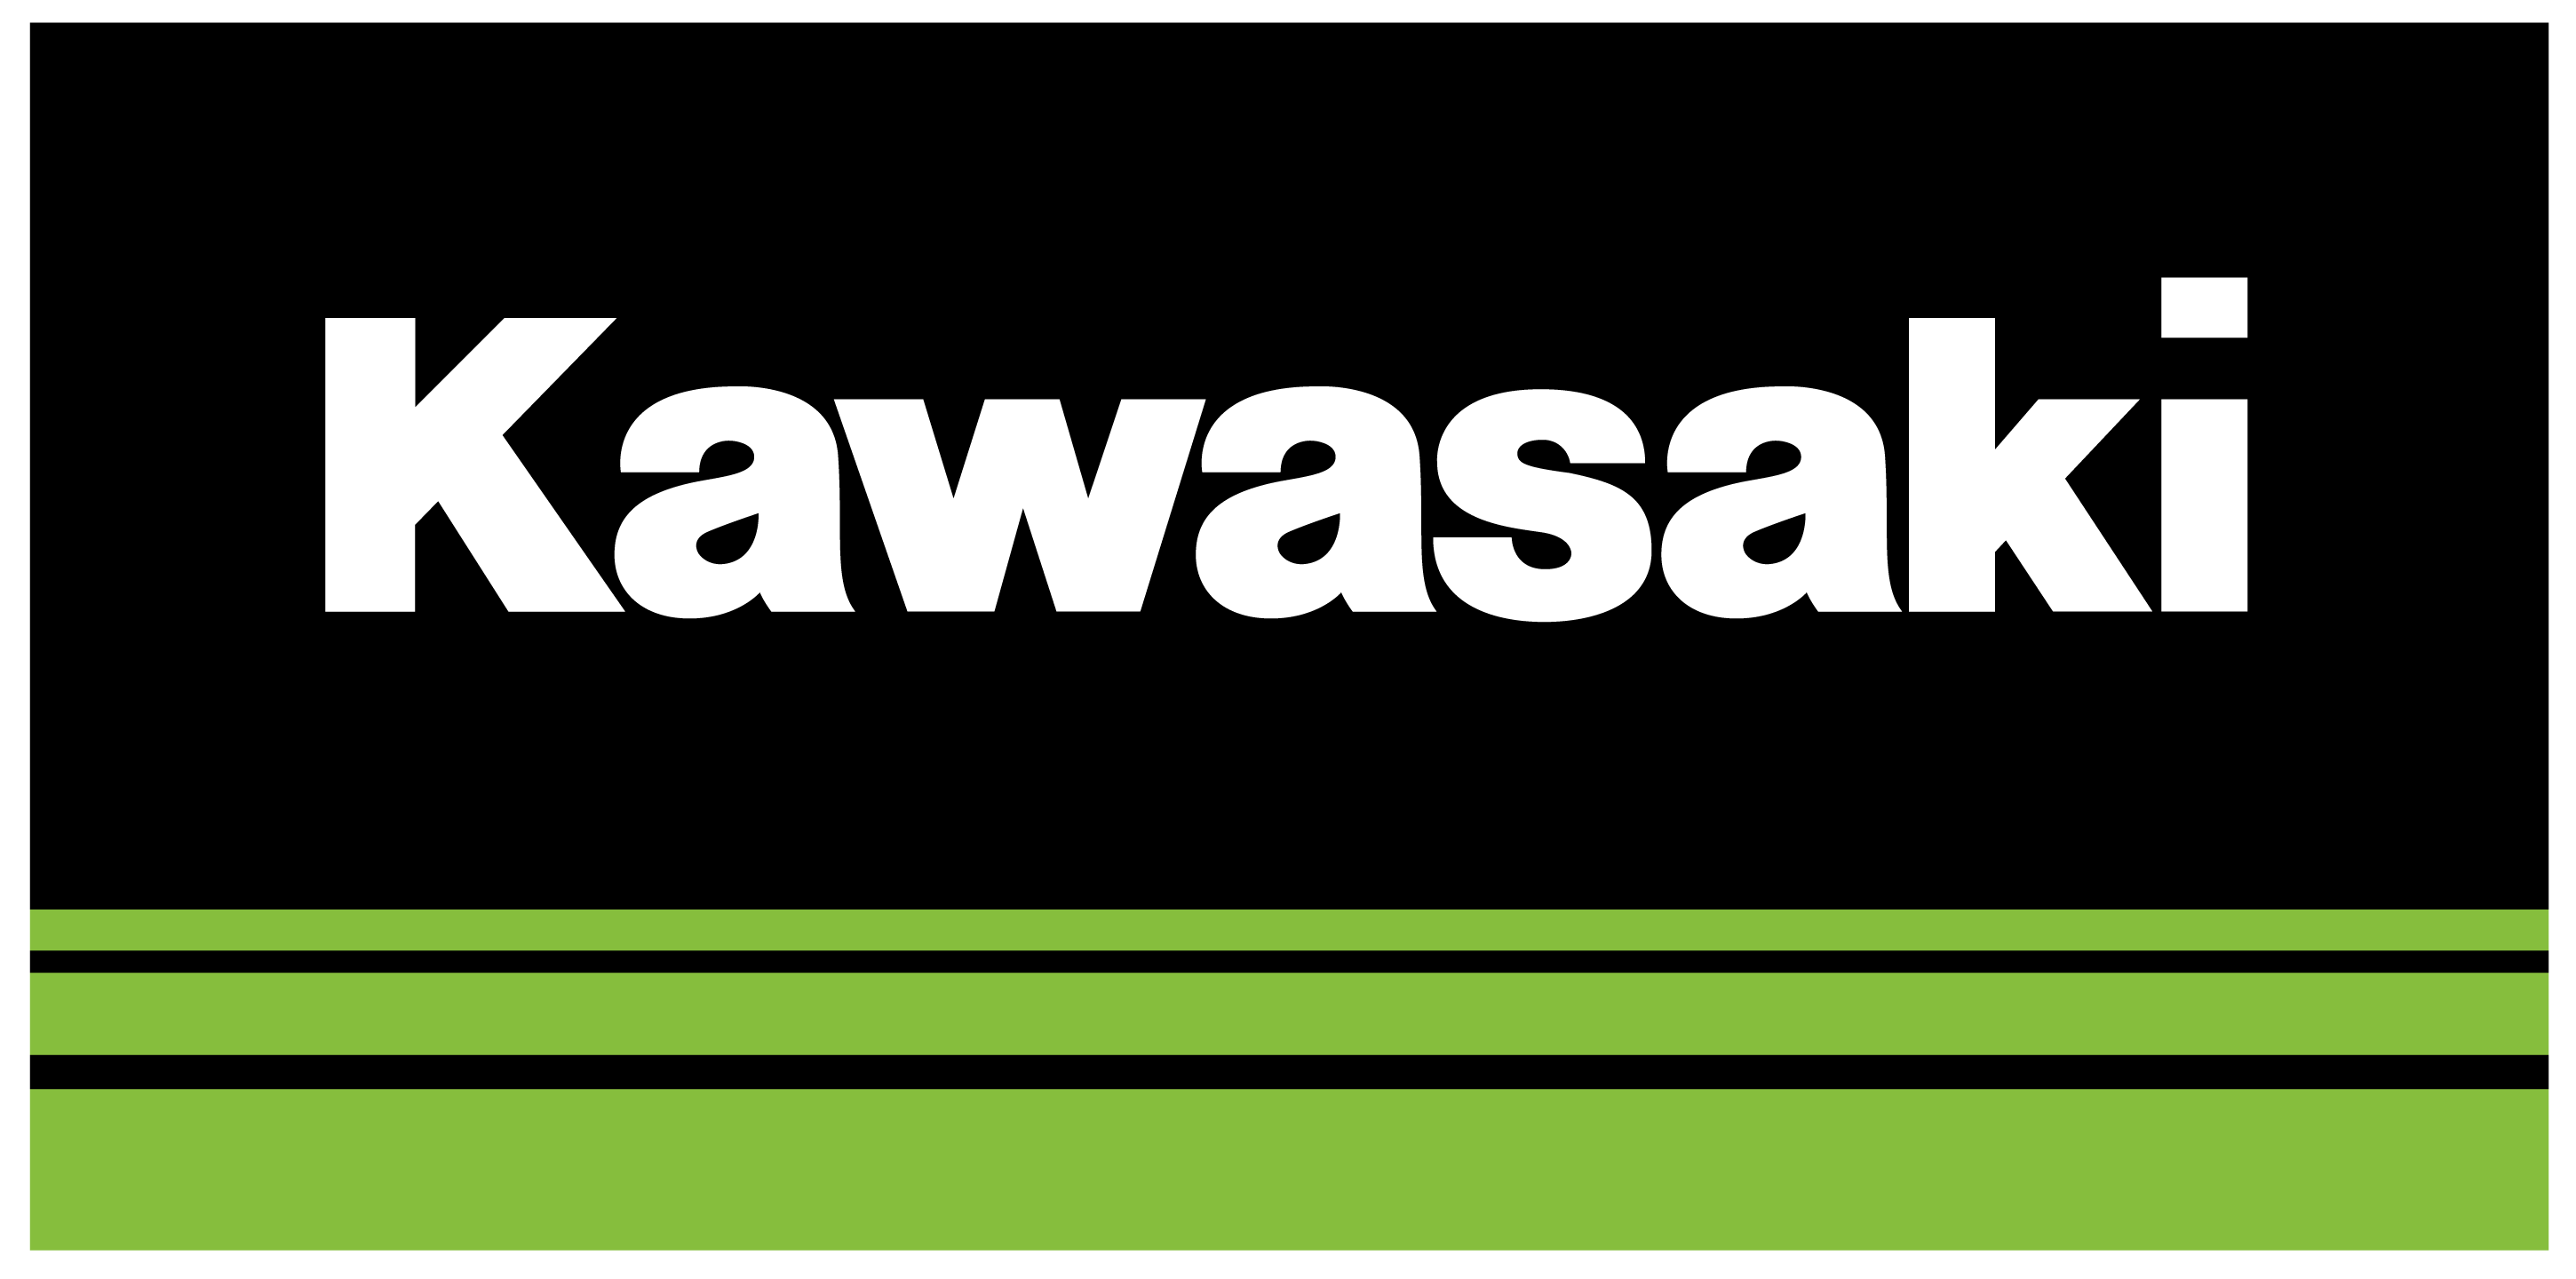 Kawasaki Logo  History Meaning Motorcycle Brands